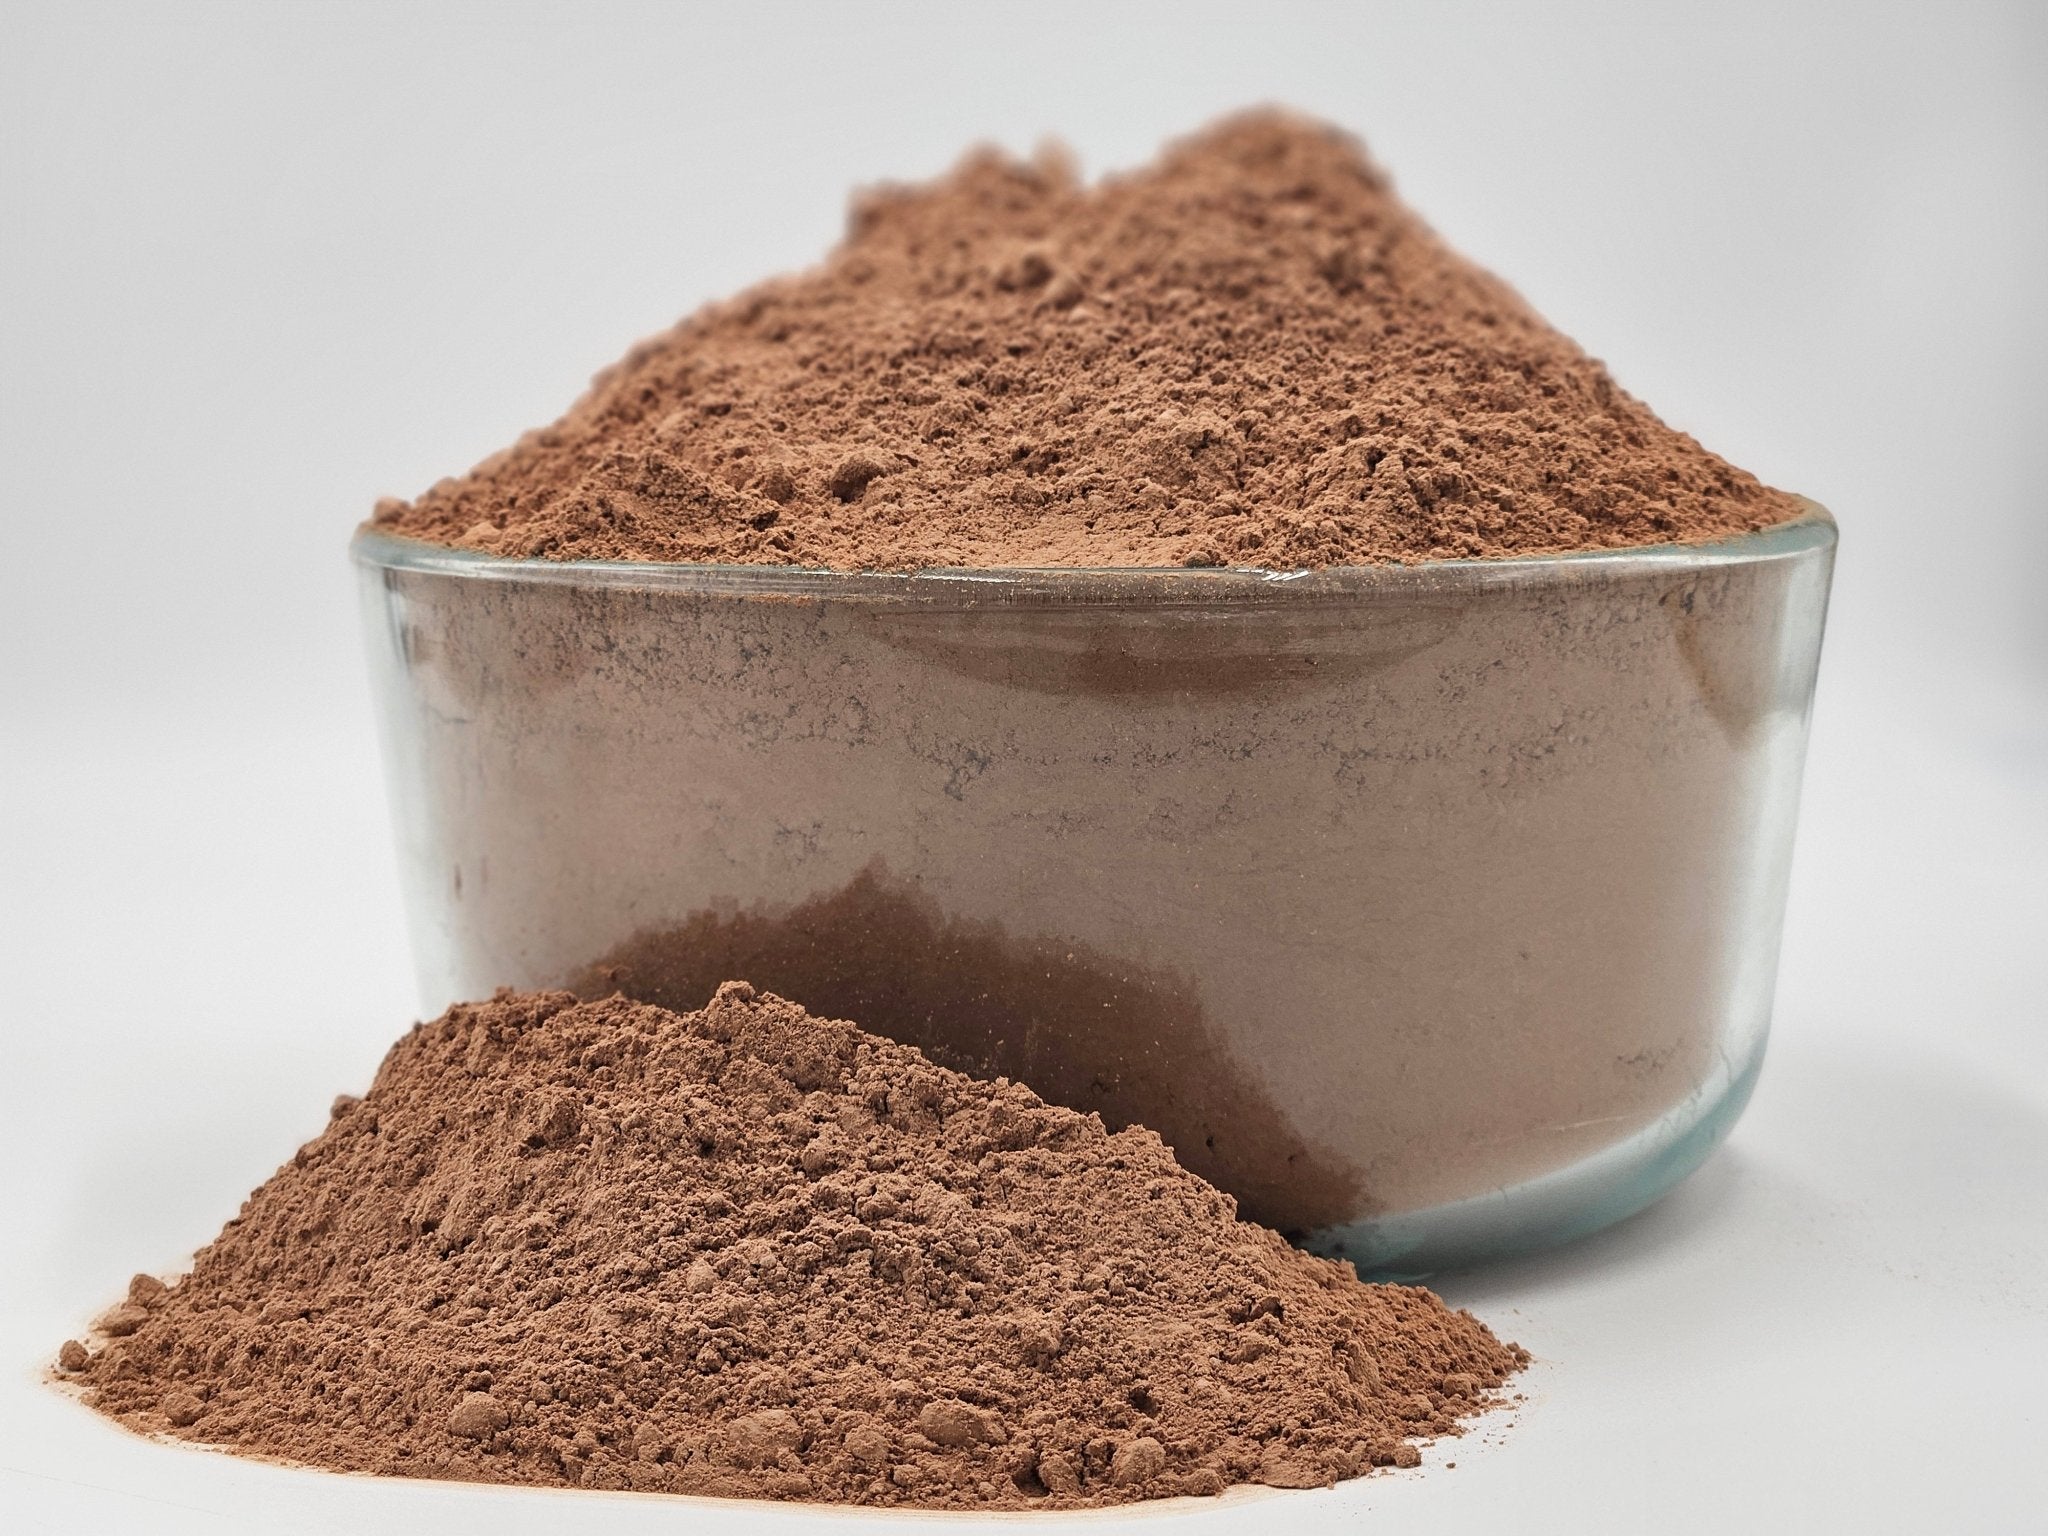 Raw Cacao Powder 8 oz- Criollo